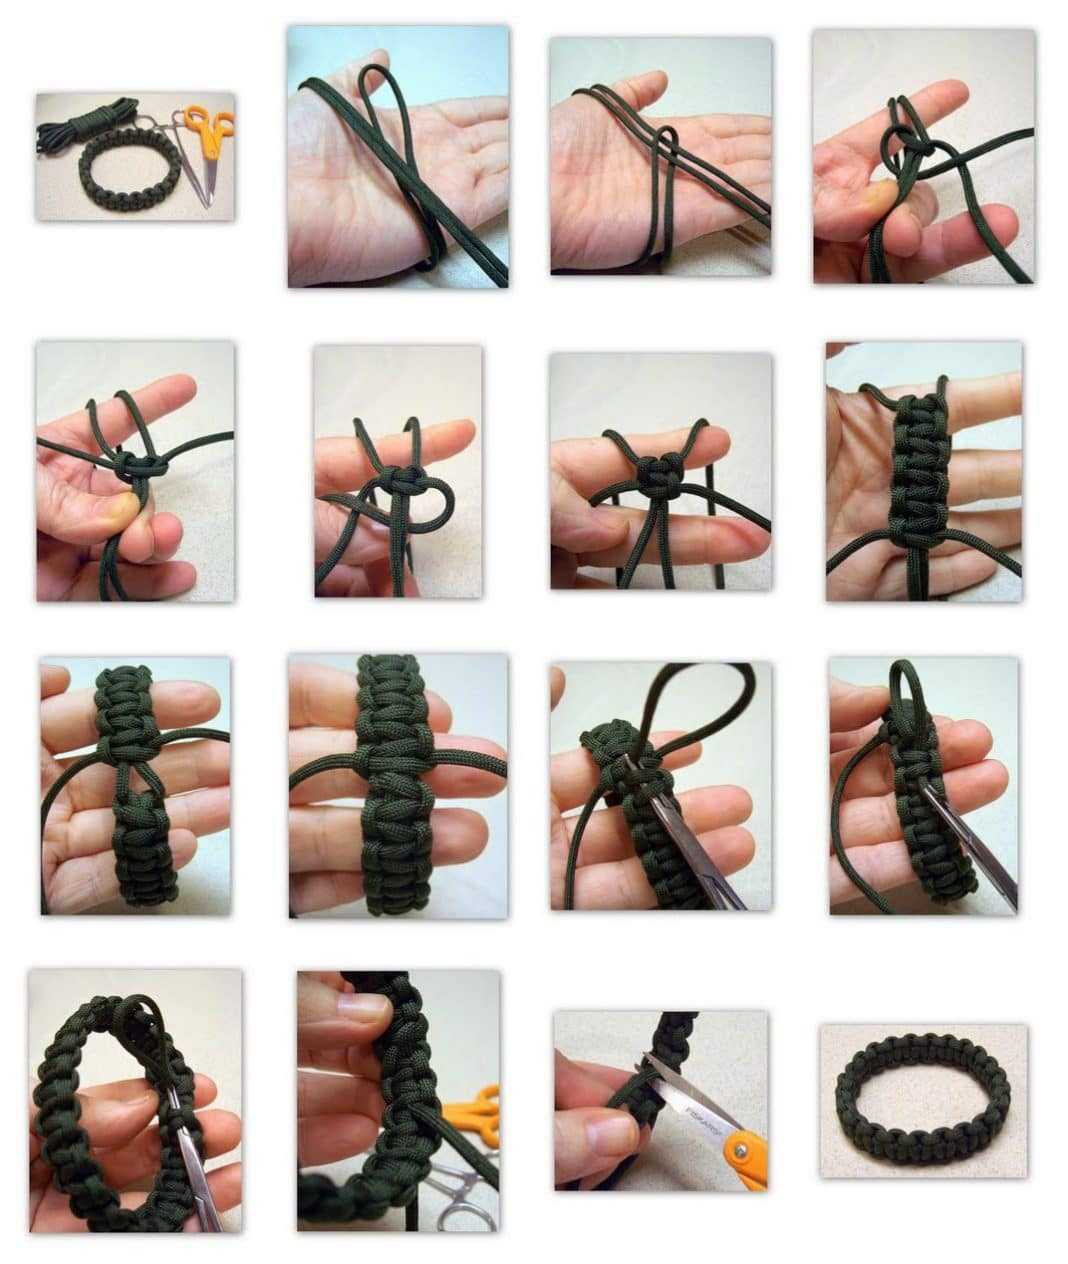 Ремень из веревки. как сплести из паракорда ремень своими руками: инструкции и схема плетения пояса